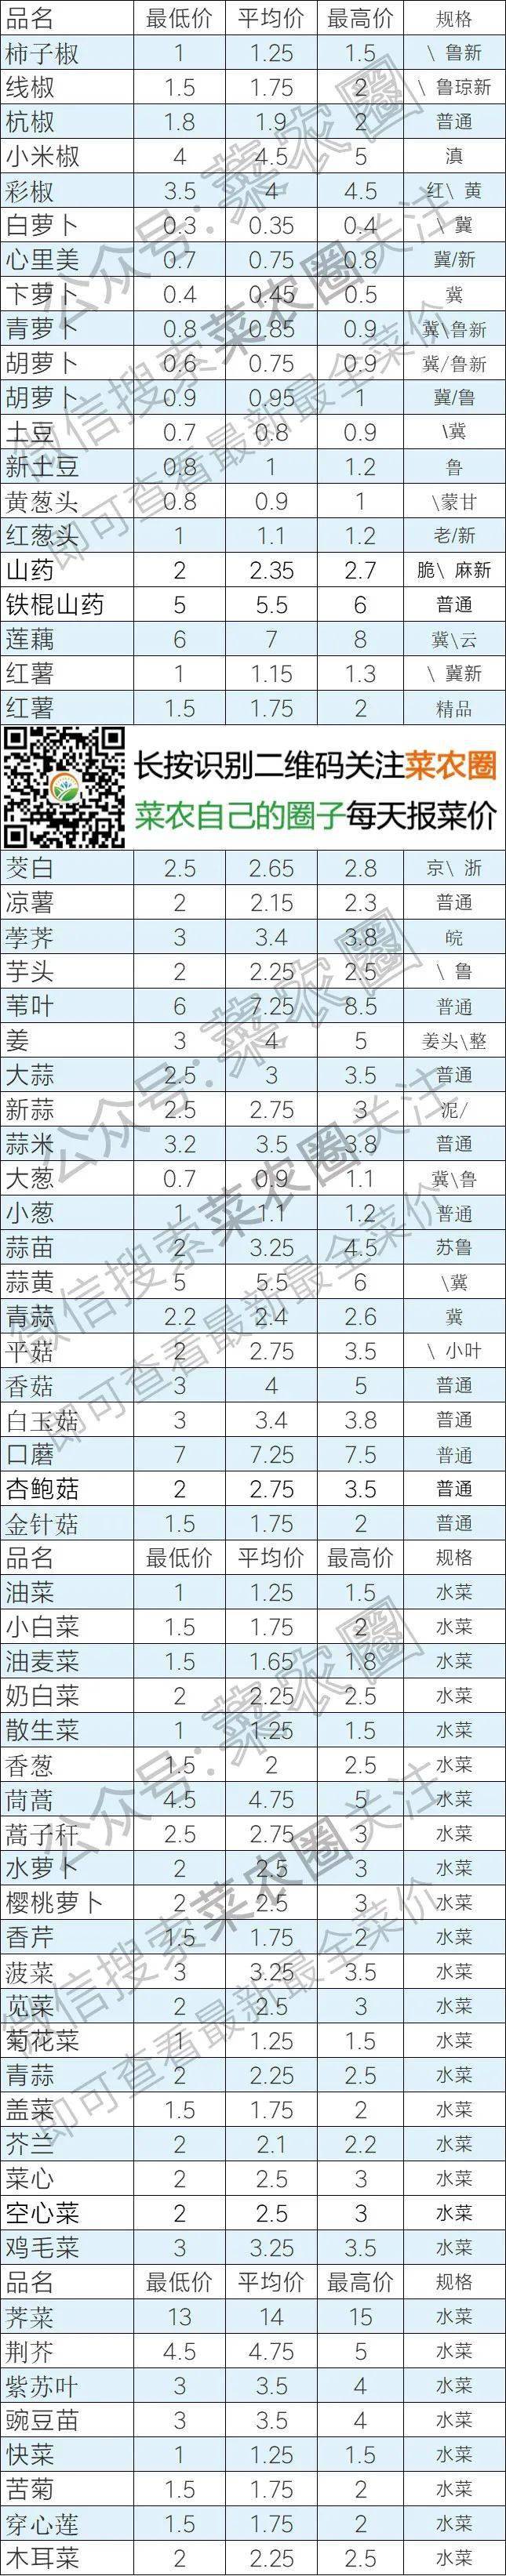 2021年6月14日北京新发地,山东寿光,云南,河北石家庄今日蔬菜价格行情一览表